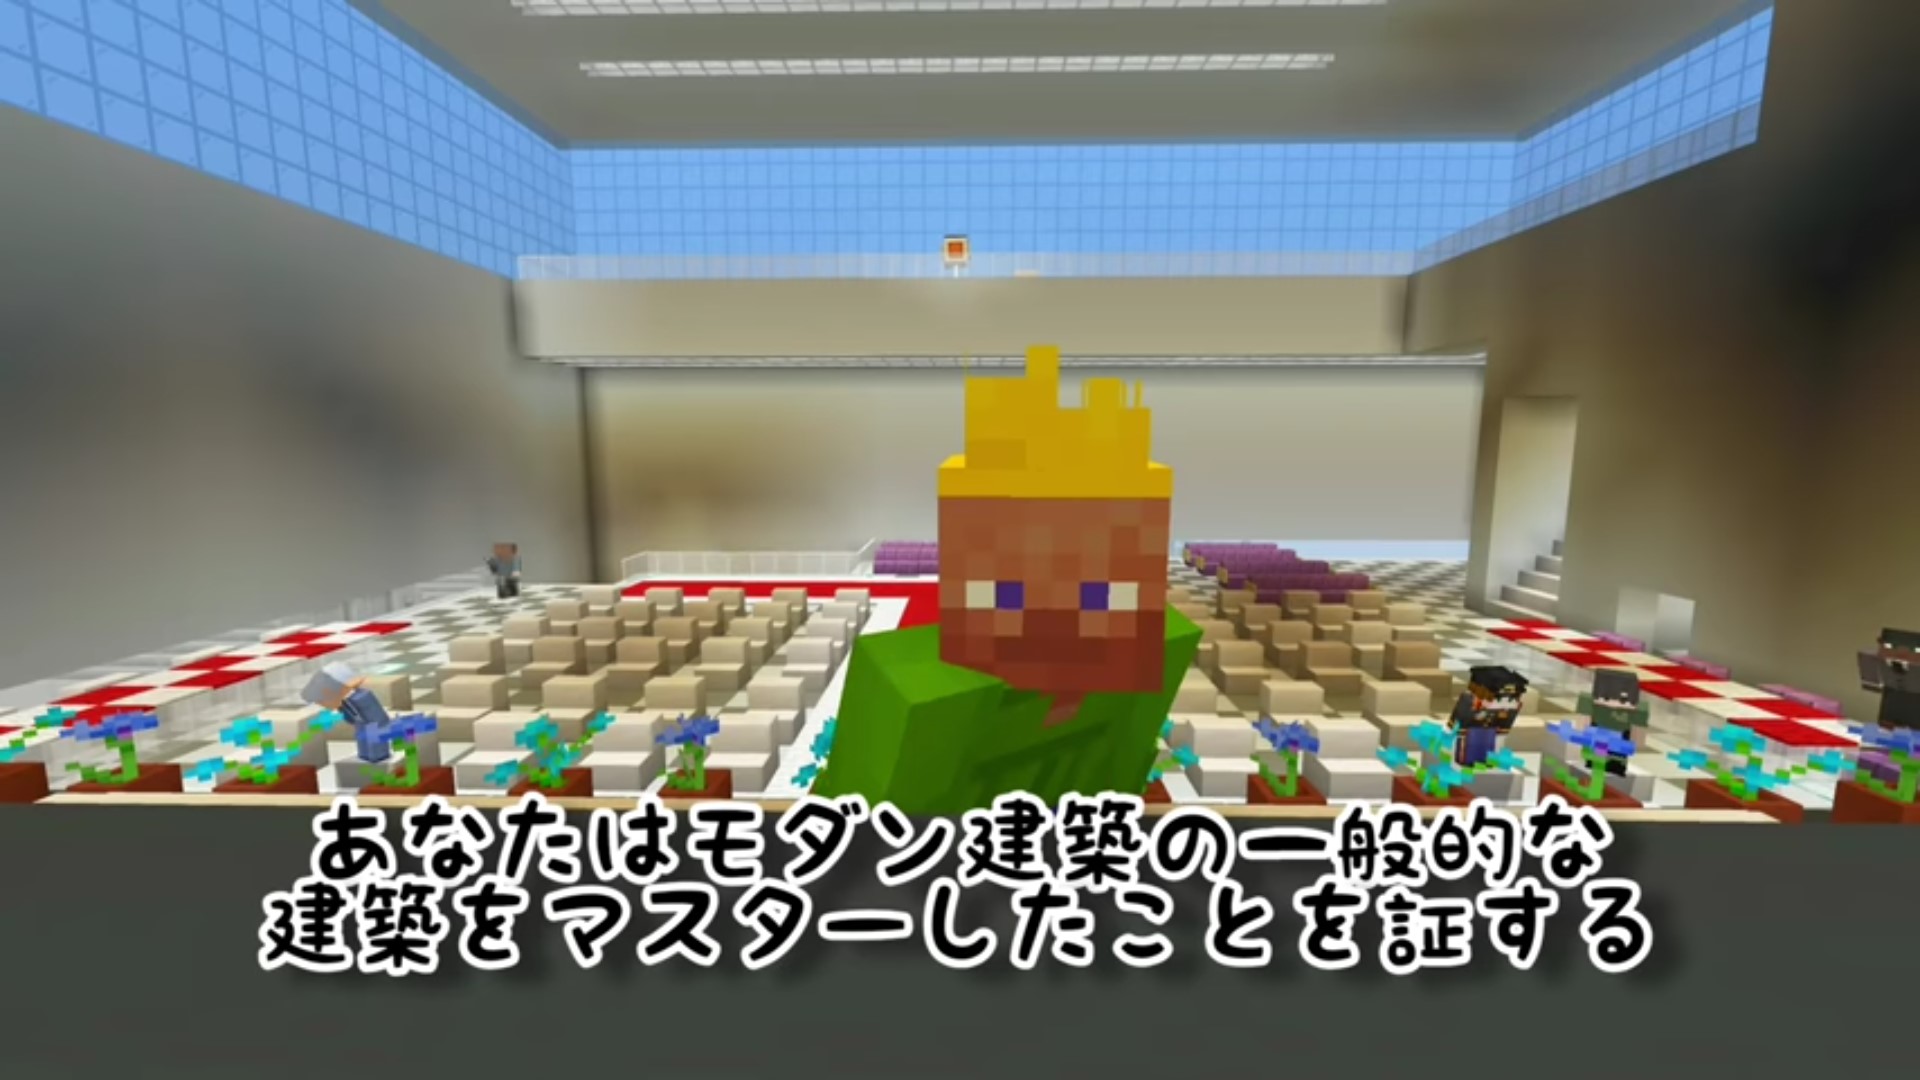 Des étudiants japonais recréent leur cérémonie de remise de diplôme dans Minecraft